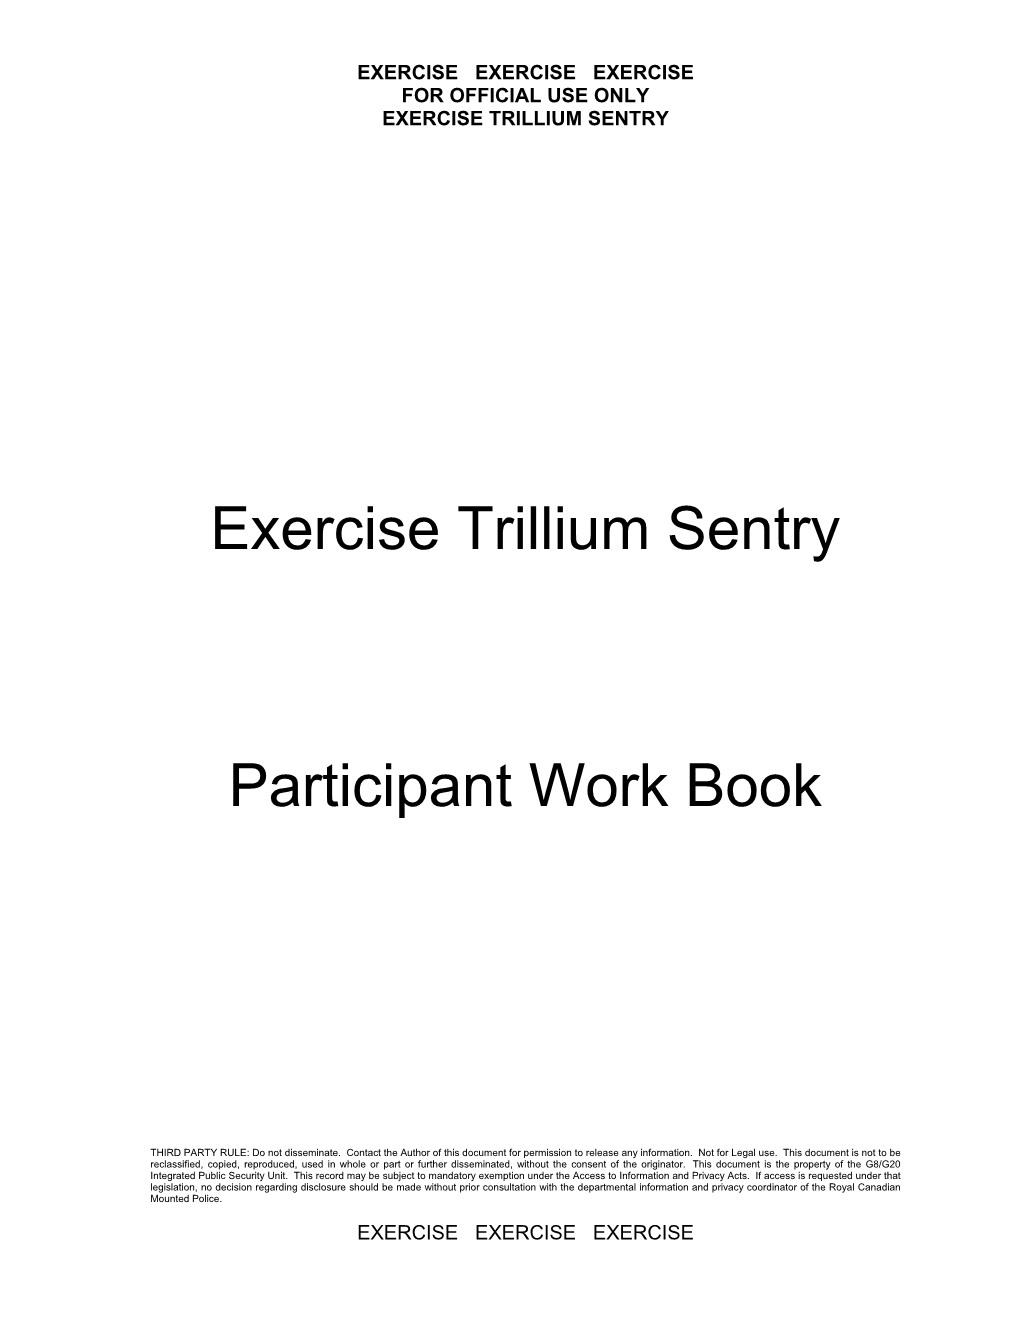 Exercise Trillium Sentry Participant Work Book